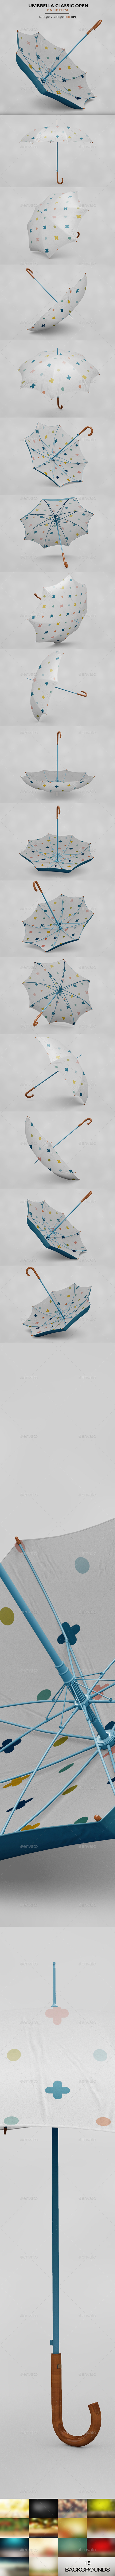 GraphicRiver Umbrella Clasic Mockup 20608004